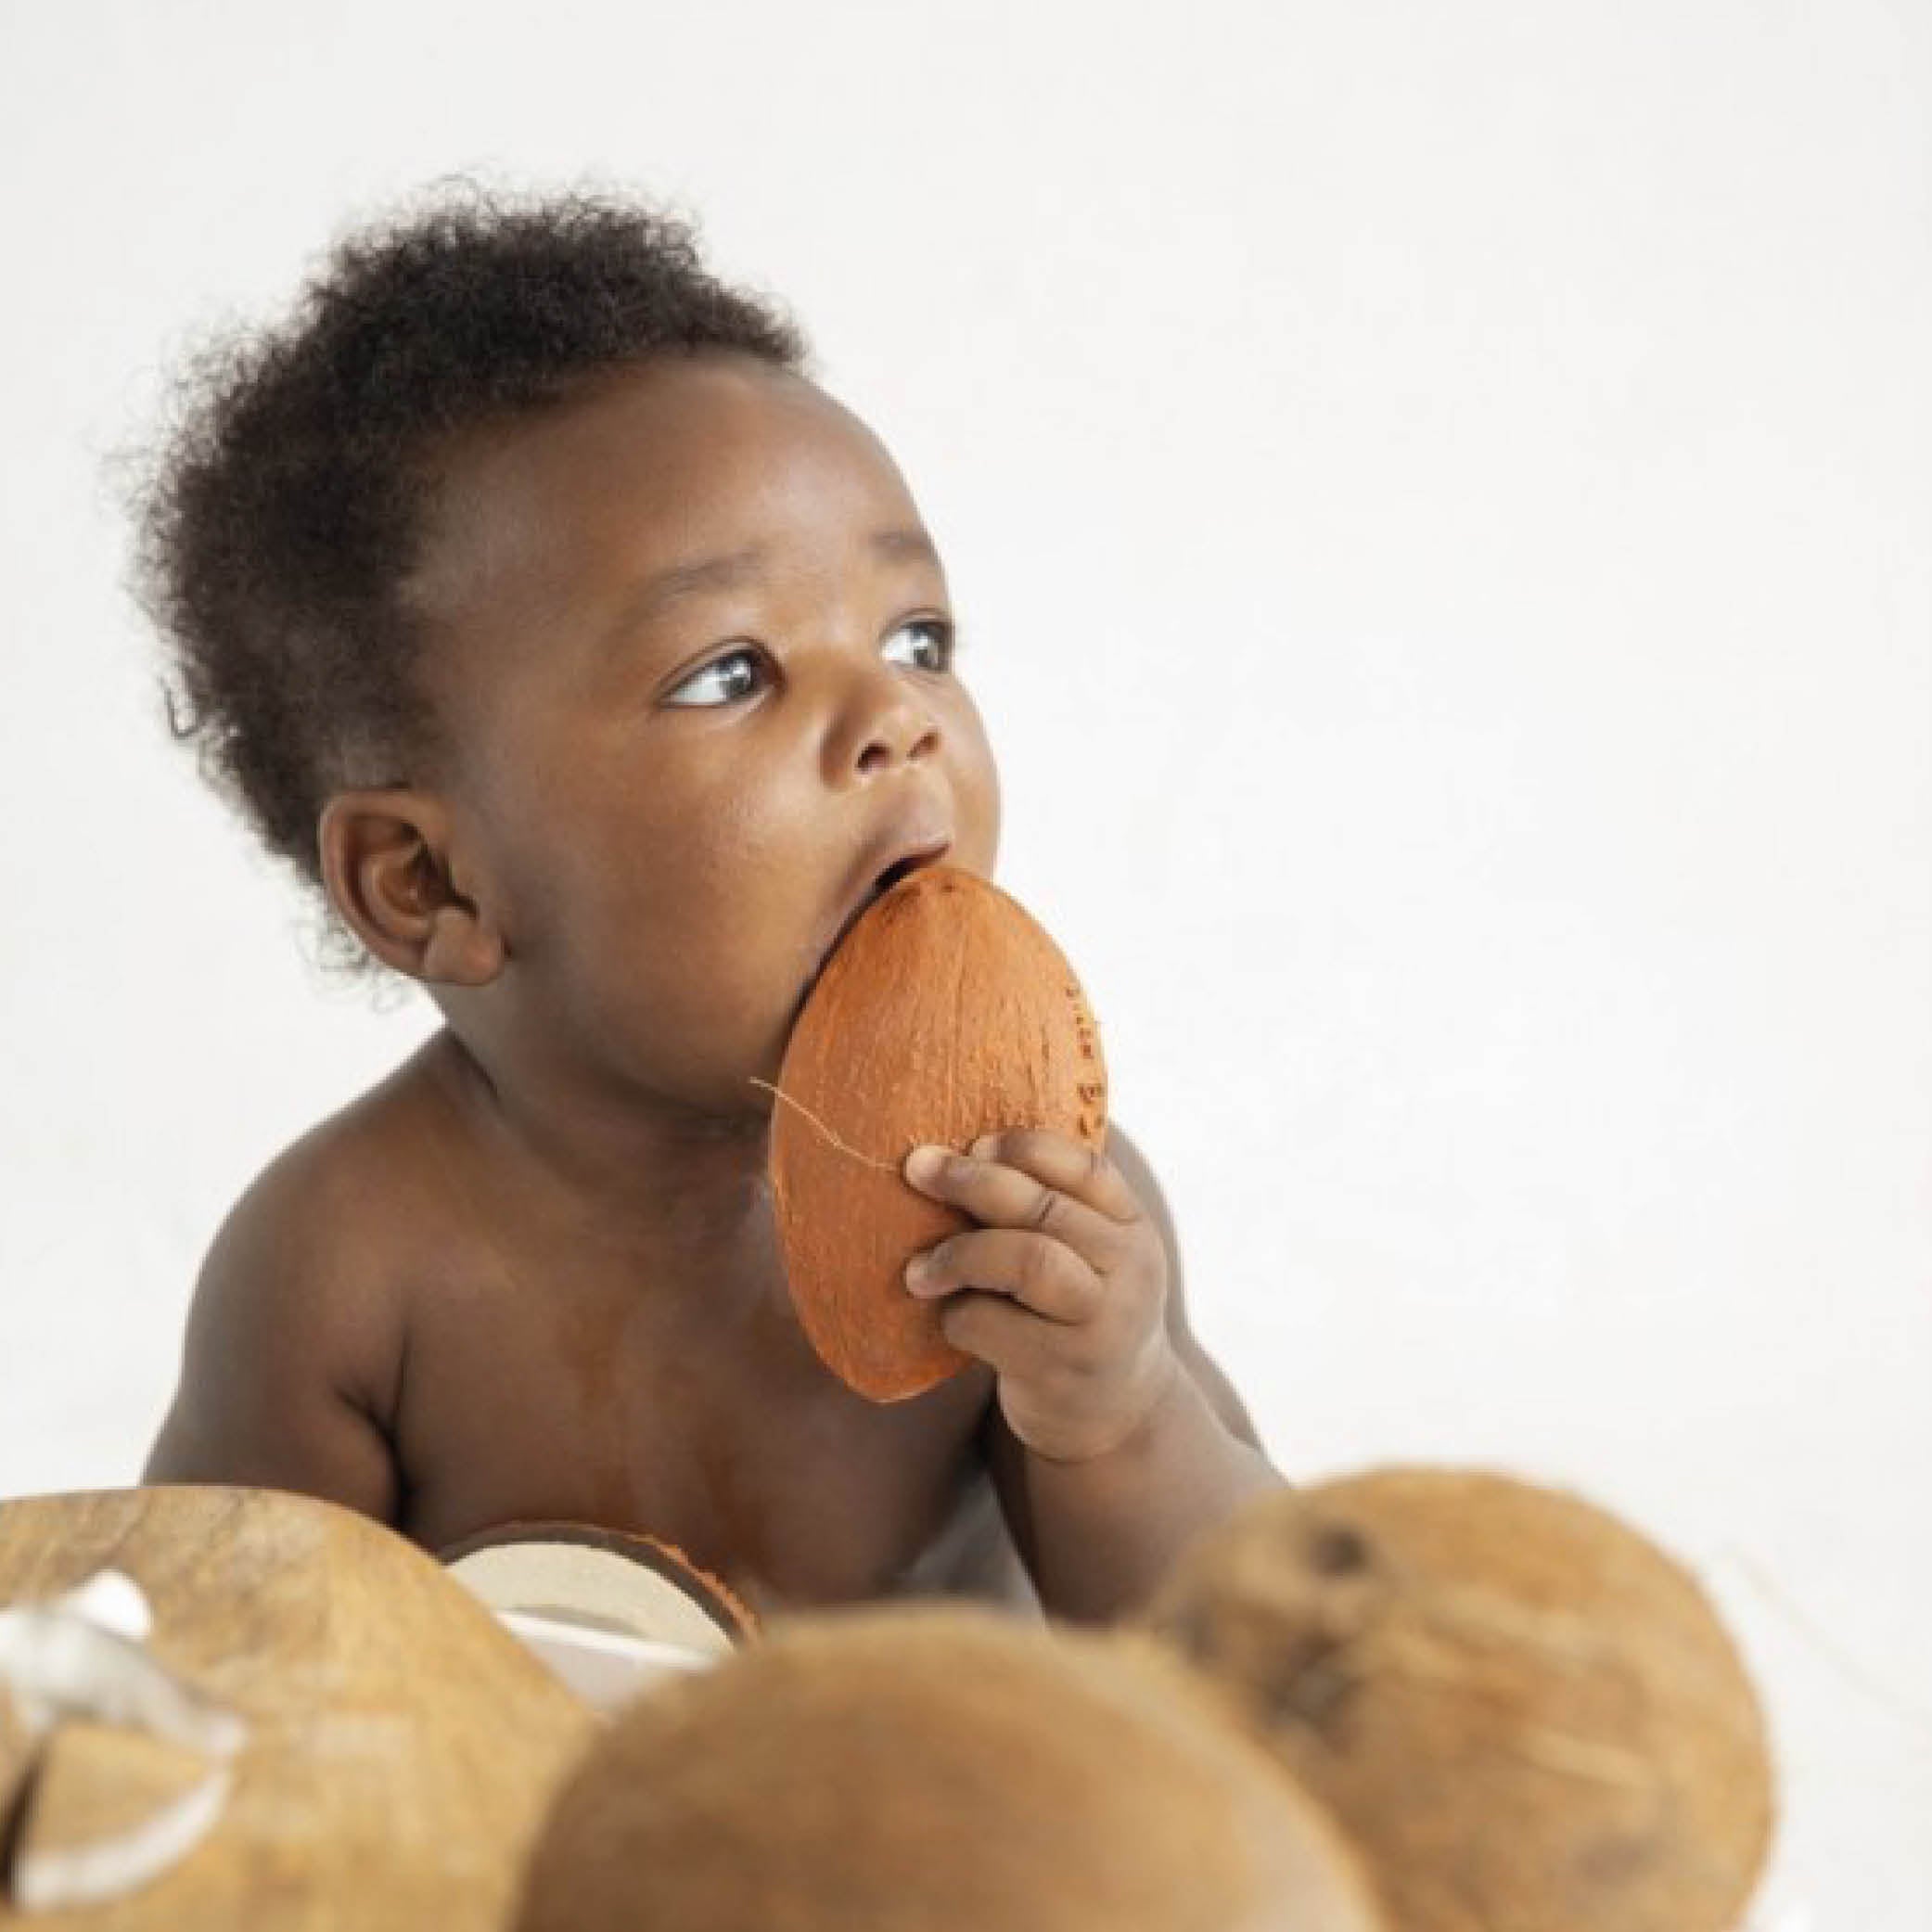 Baby Beißring Teether Coco die Kokosnuss aus Naturkautschuk und von Hand bemalt mit speiseechten Farben - 100% natürlich von Oli und Carol bei kinder und konsorten Düsseldorf